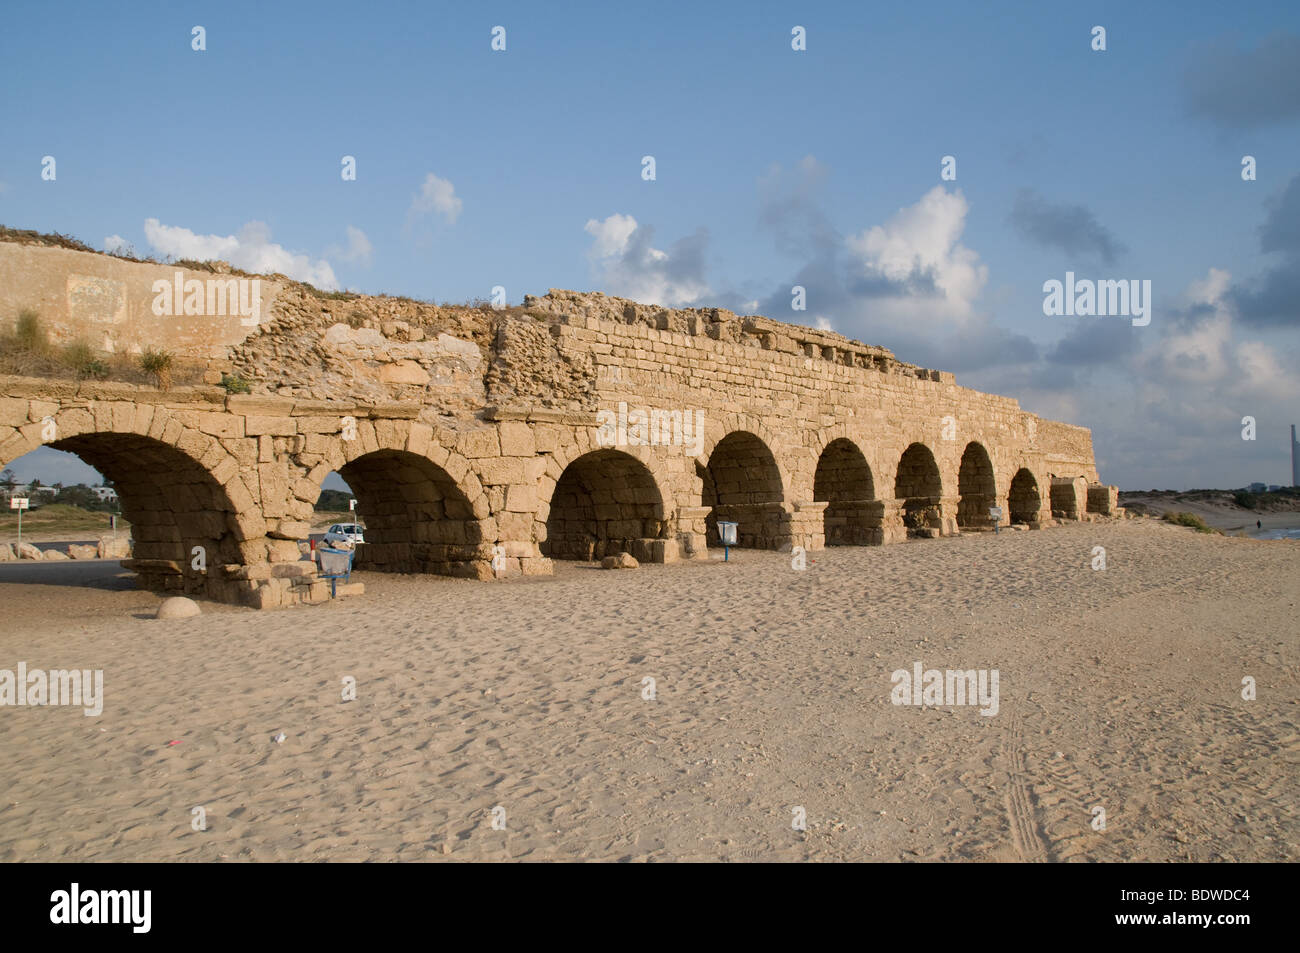 View of the Roman aqueduct in Caesarea, Israel Stock Photo